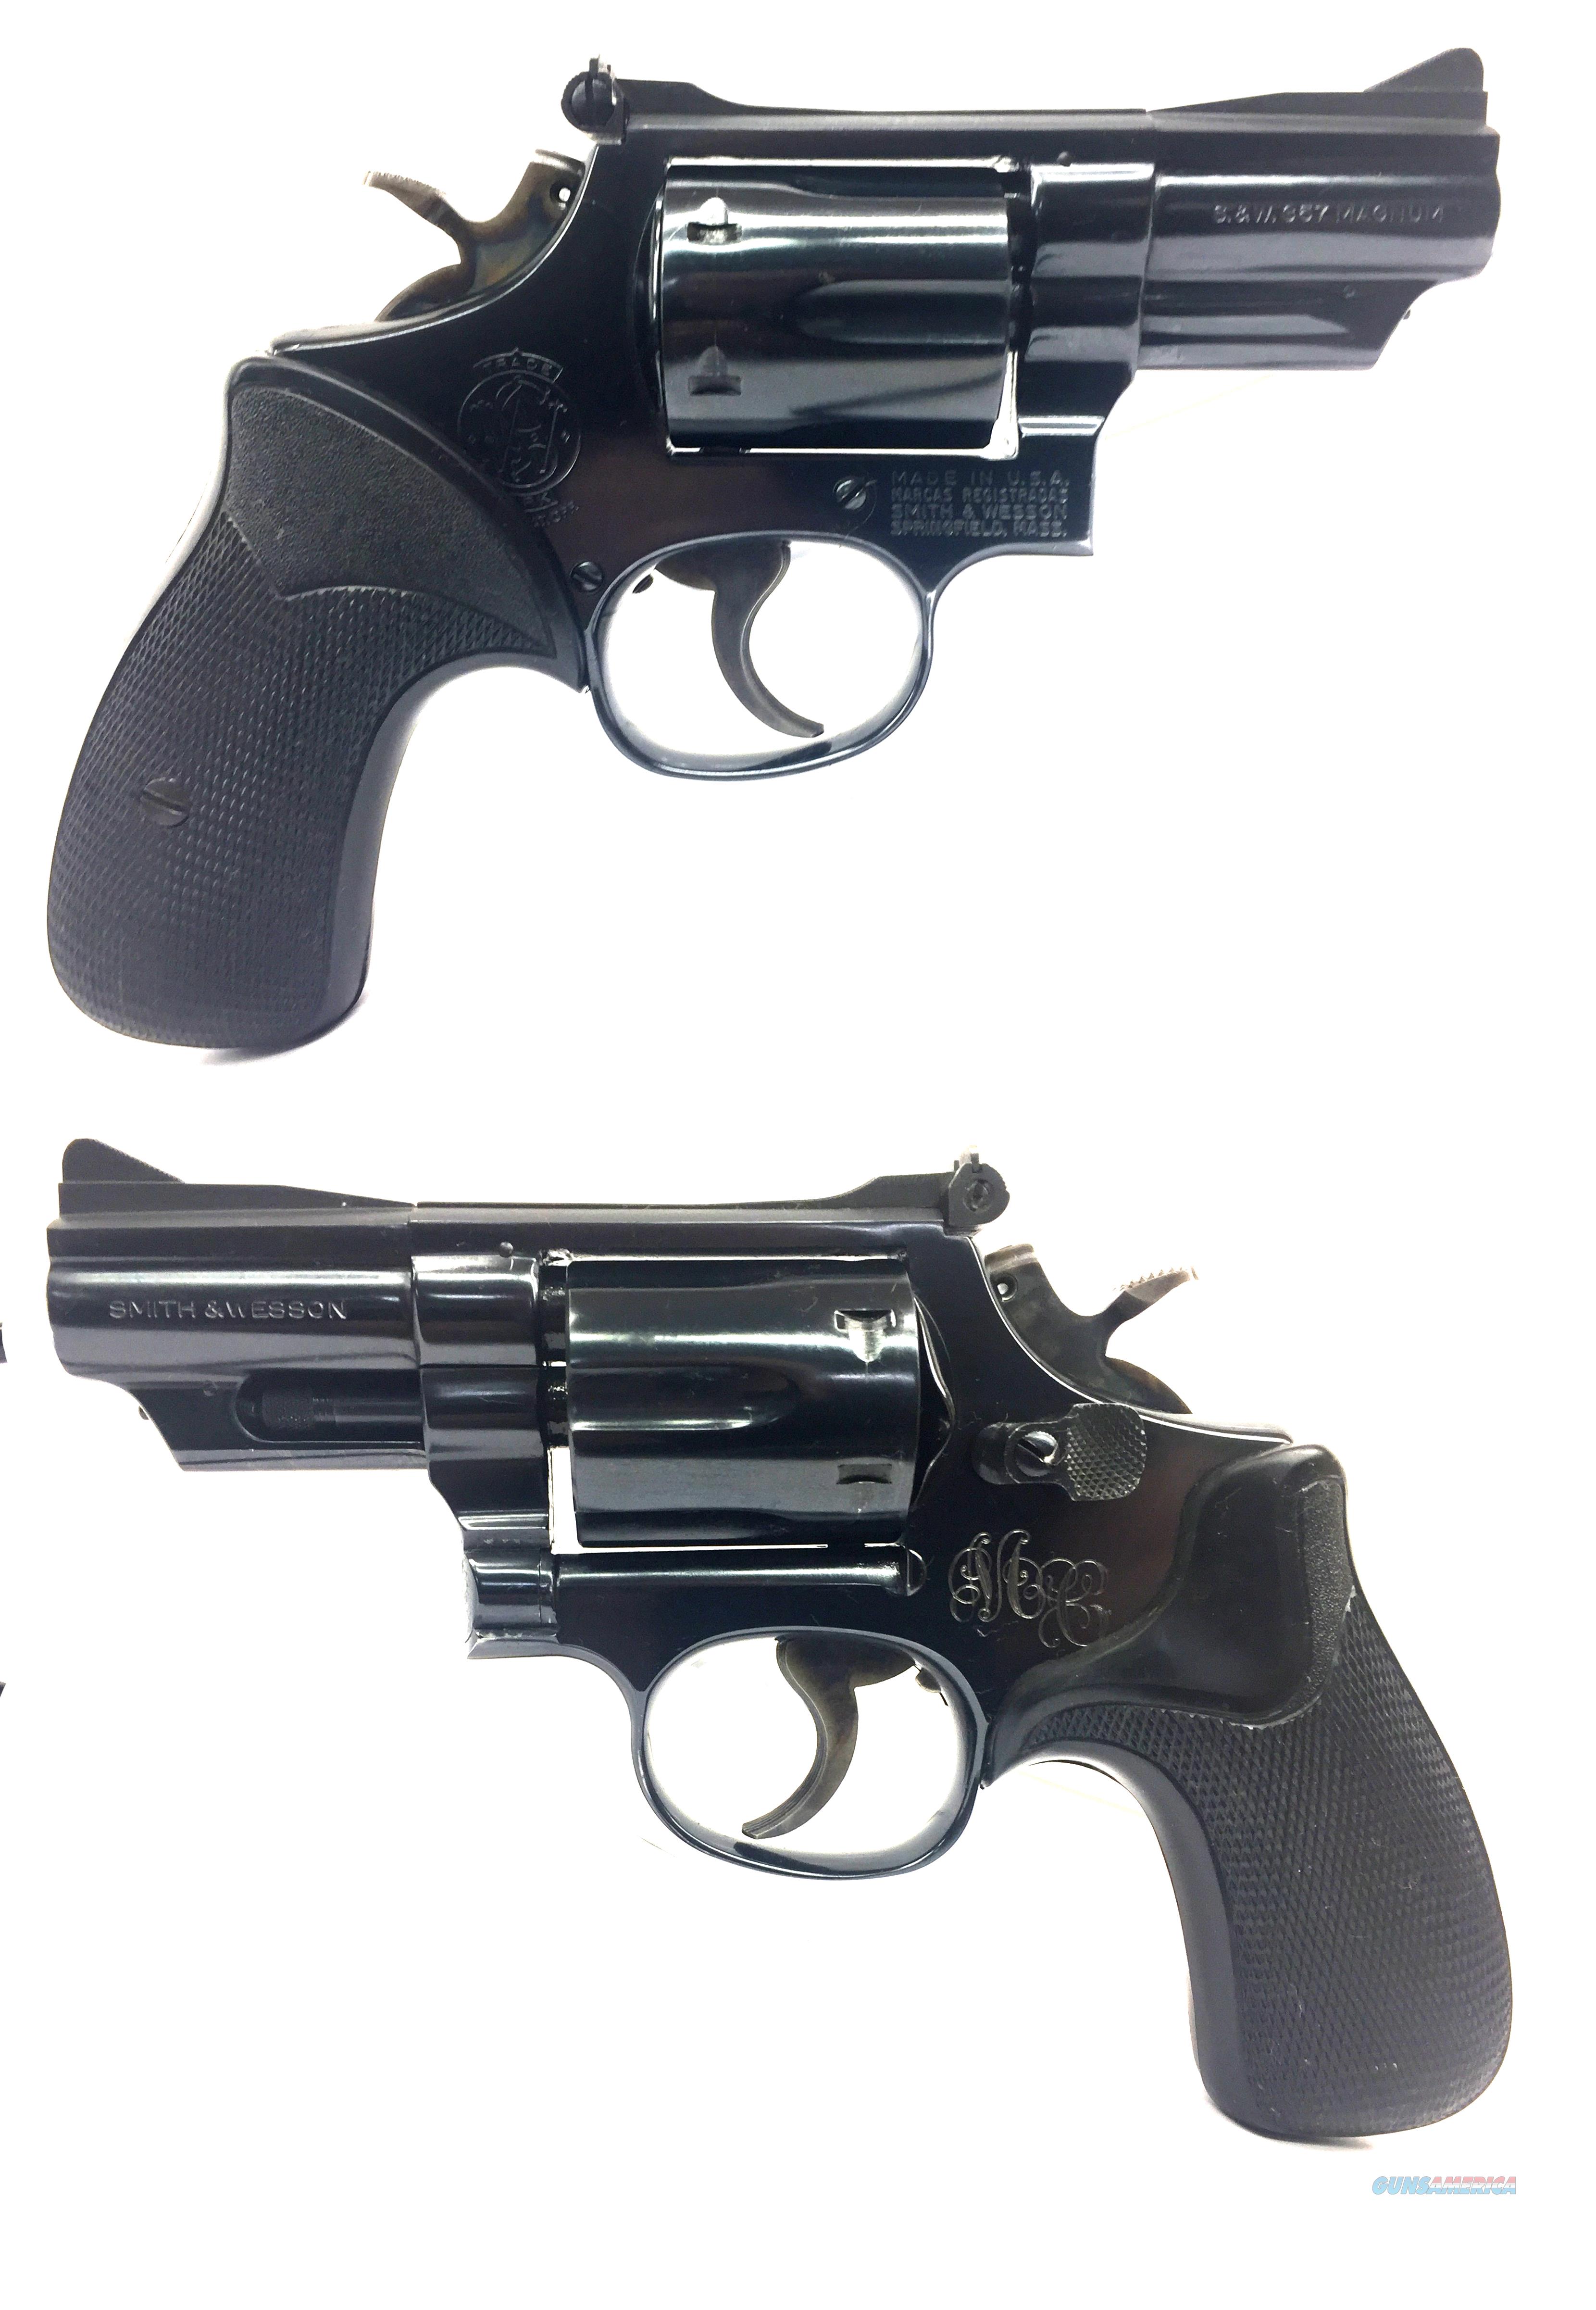 19 003. Смит-Вессон револьвер 19. Смит и Вессон модель 19. Smith & Wesson model 19. Смит и Вессон модель 3.